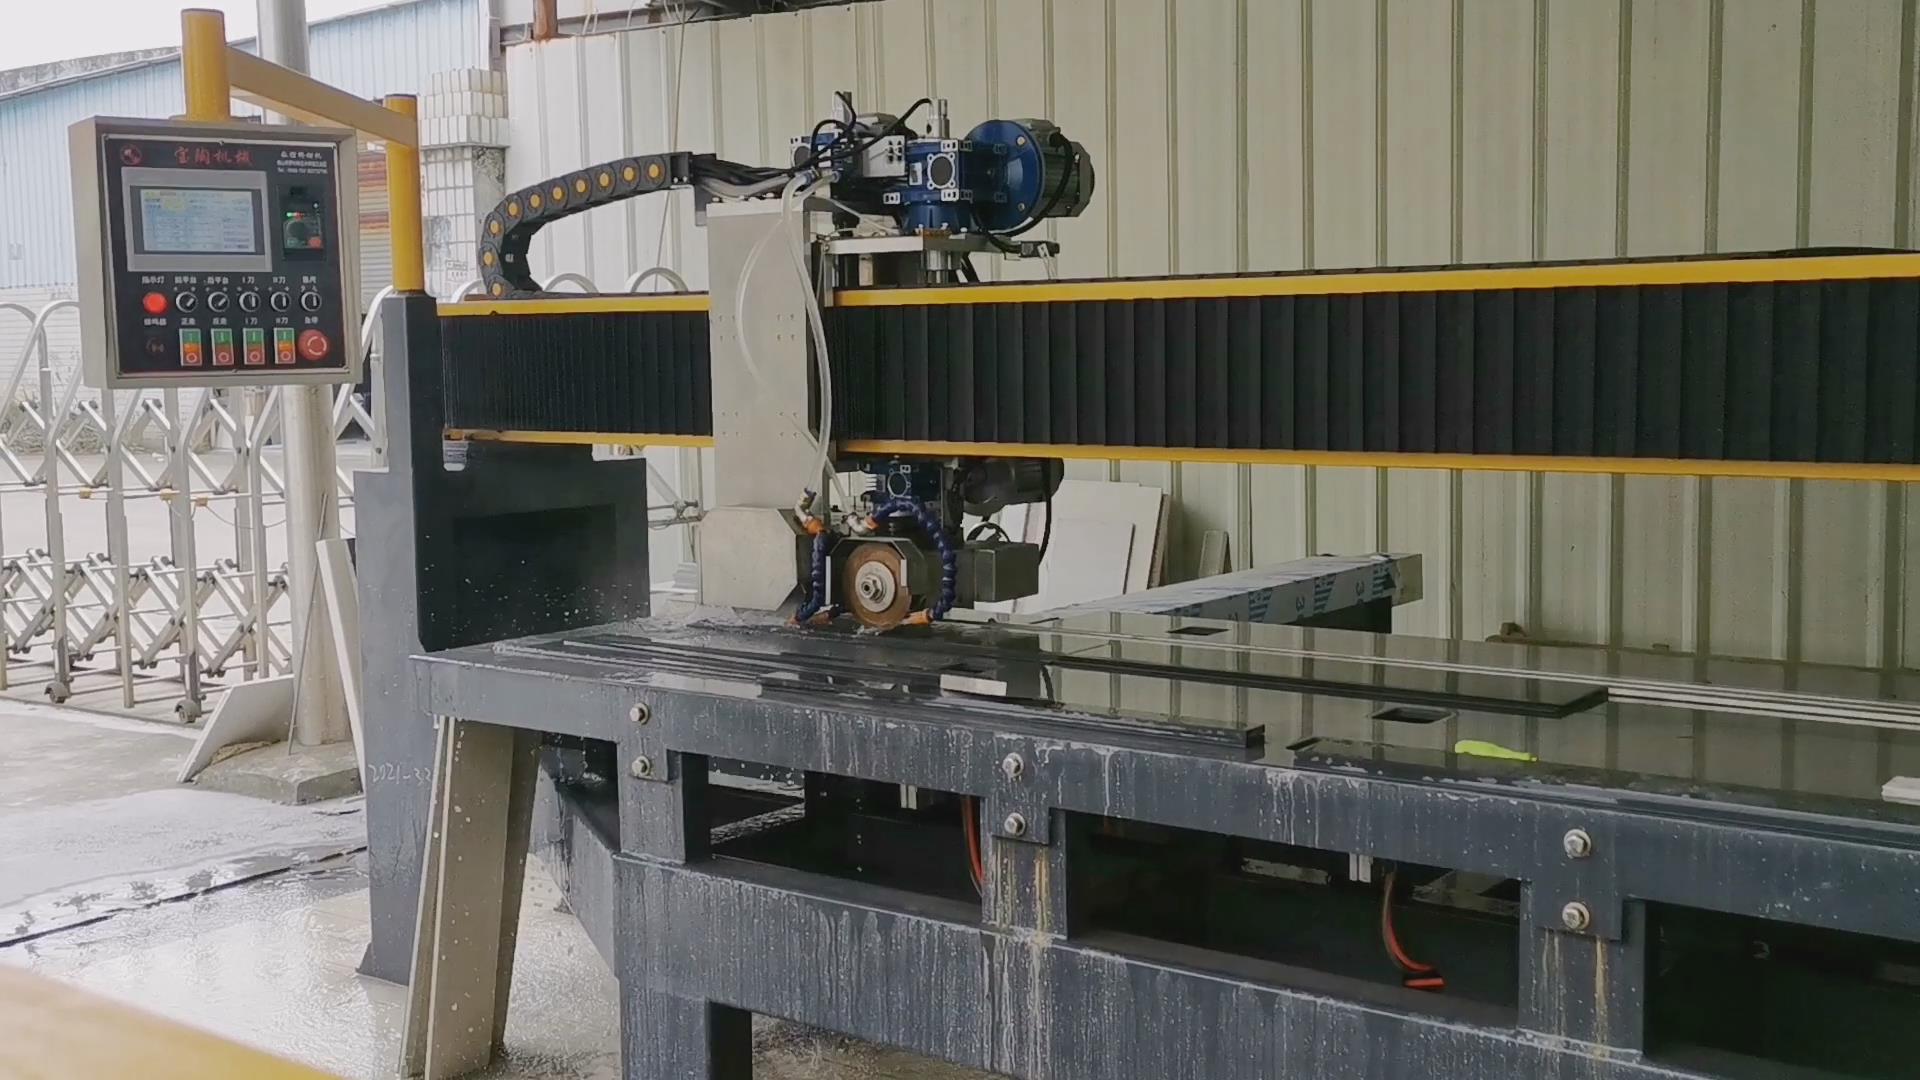 巖板數控瓷磚切割機 自動回刀功能 3200橋切機